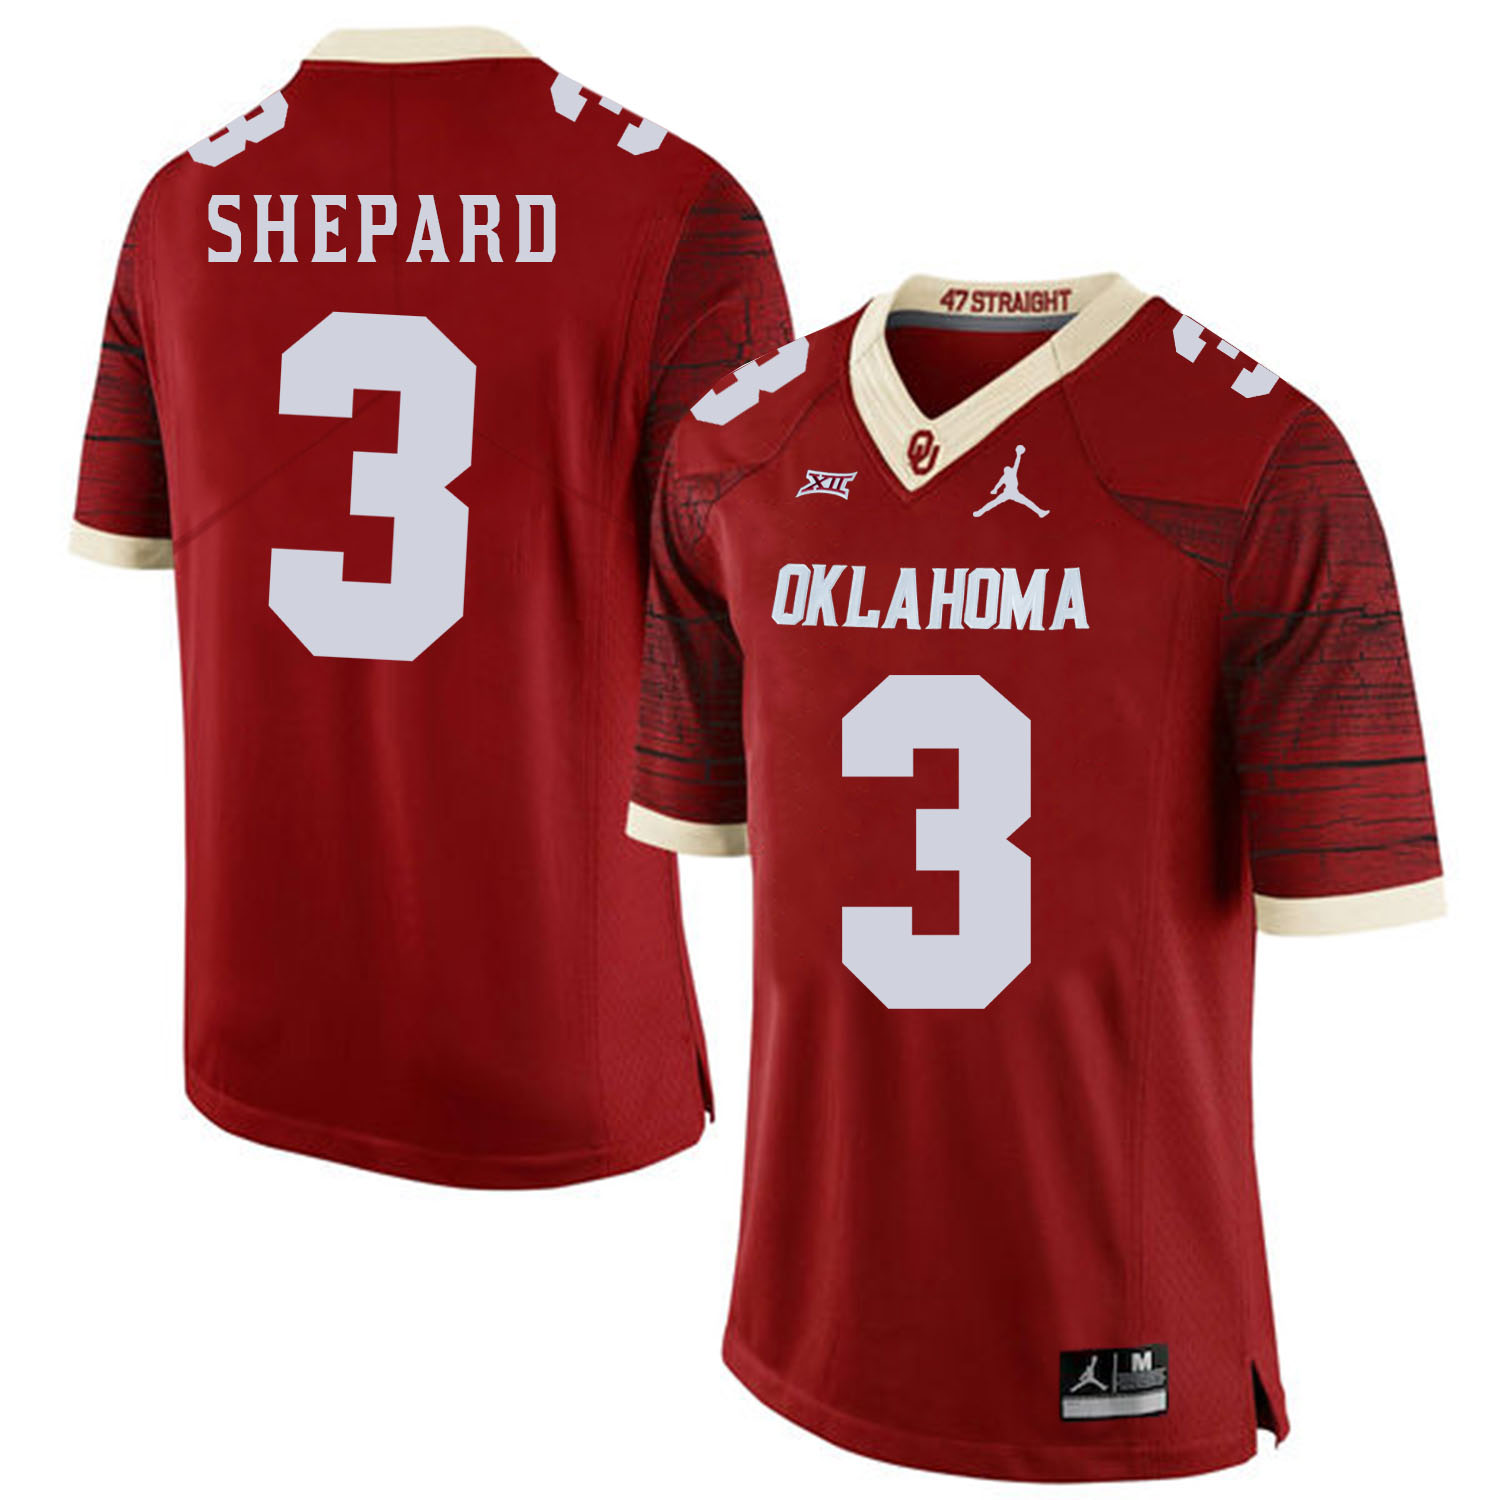 Oklahoma Sooners 3 Sterling Shepard Red 47 Game Winning Streak College Football Jersey